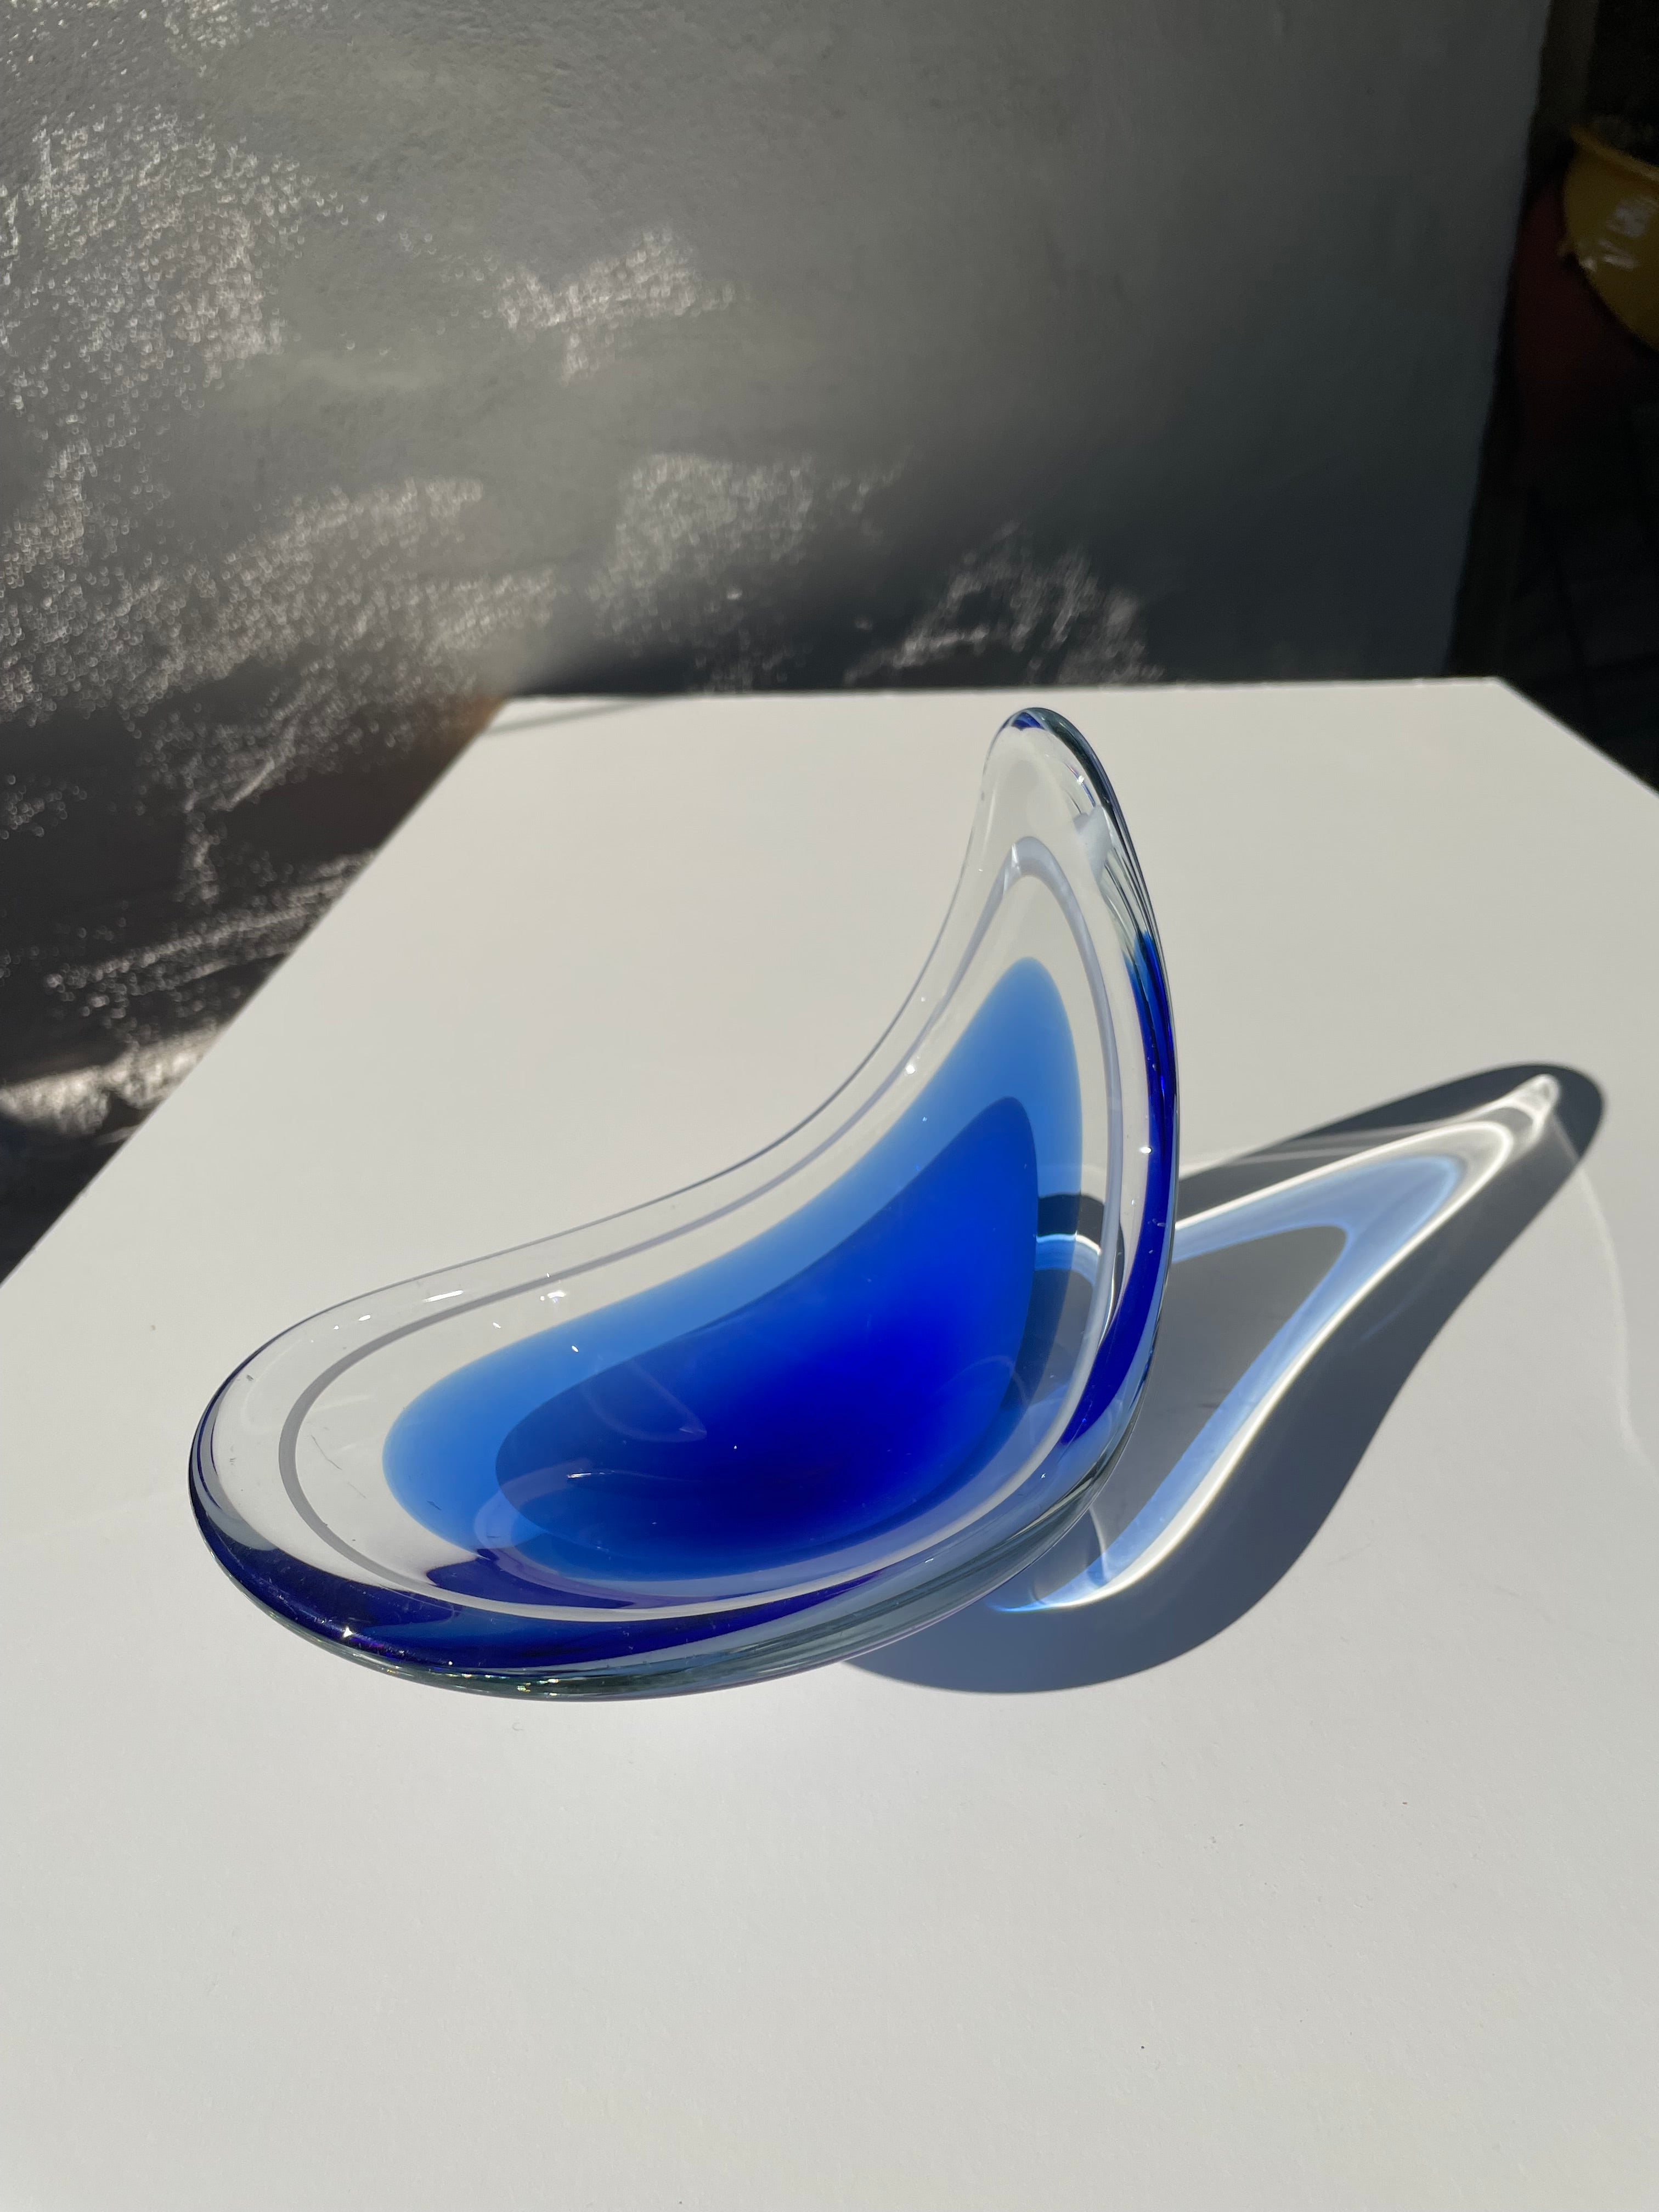 Verre d'art superposé d'un bleu profond et vif, conçu par Paul Kedelv pour la société suédoise Flygsfors. Une pièce rare de couleur bleue de la série Coquille conçue en 1956. Formes douces soufflées à la bouche avec un côté soulevé. Verre bleu